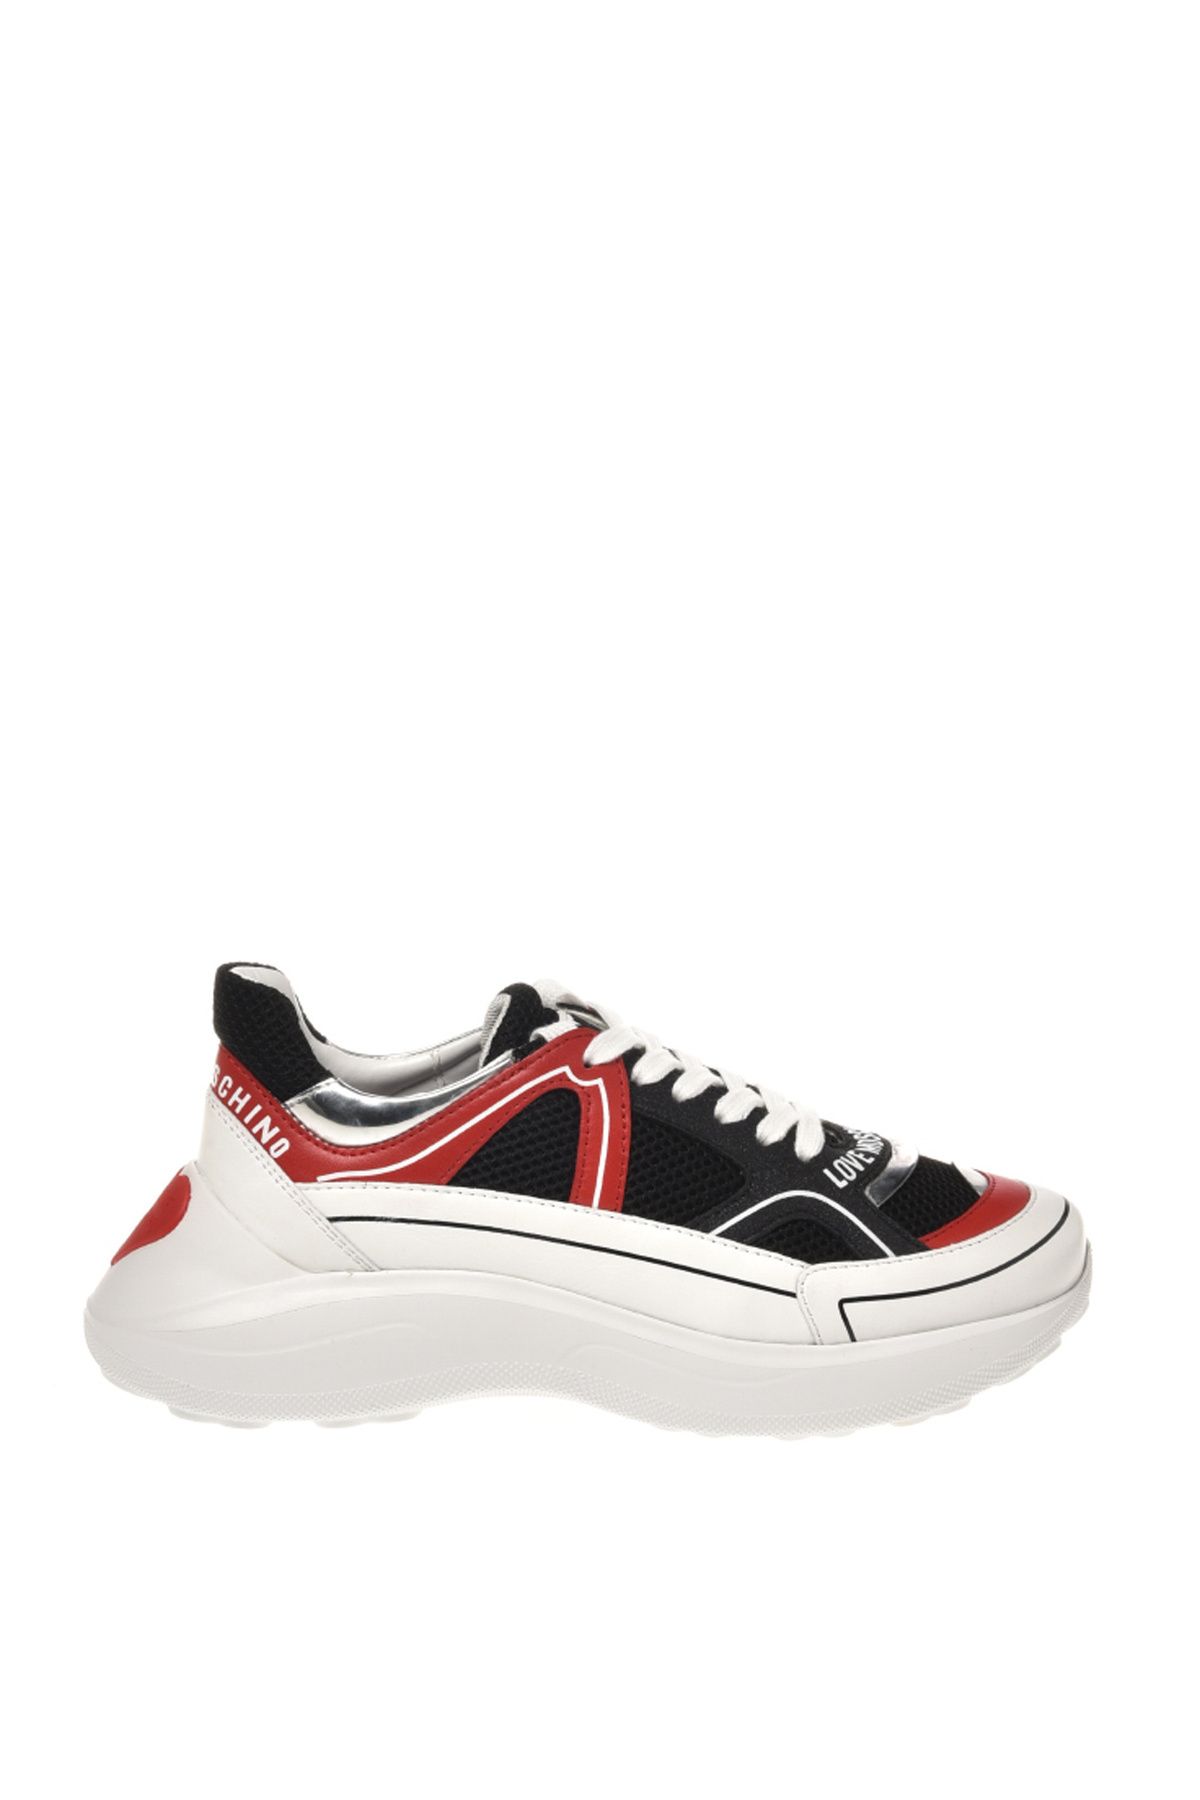 Moschino Siyah - Kırmızı Kadın Sneaker JA15016G1HIQ600A